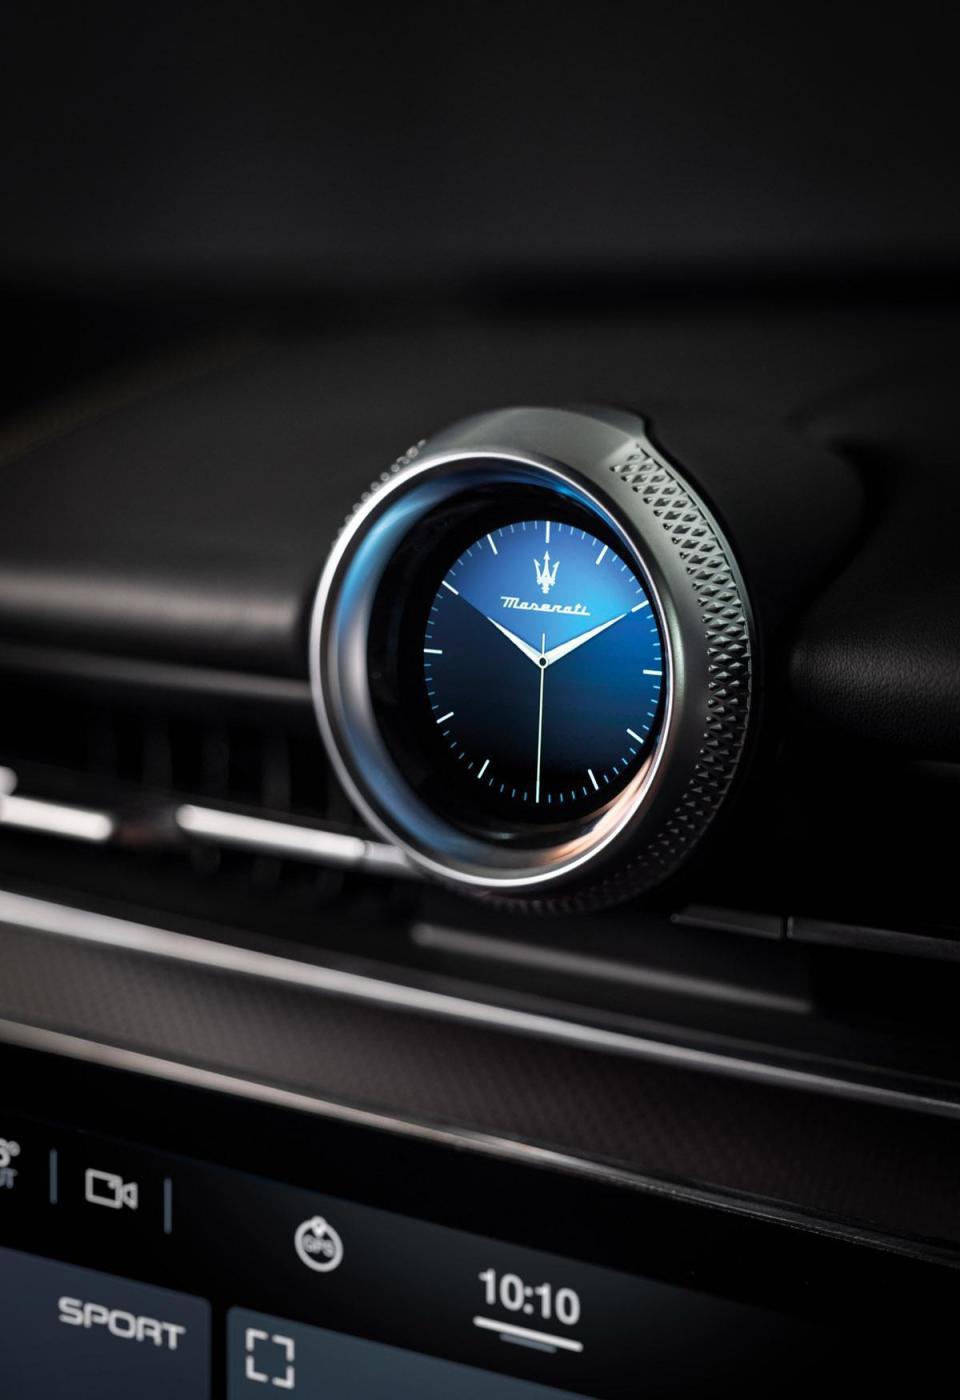 全新Grecale巧妙運用天然皮革、碳纖維、木材等料件與獨特色彩搭配所譜出的和諧義式氛圍為基底，結合由12.3吋馬鞍型數位儀錶、12.3吋及8.8吋雙螢幕中央控制面板、Maserati智能時鐘所構成的四大數位化顯示區域，帶來更加豐富多變的行車資訊與直覺便利的使用體驗。